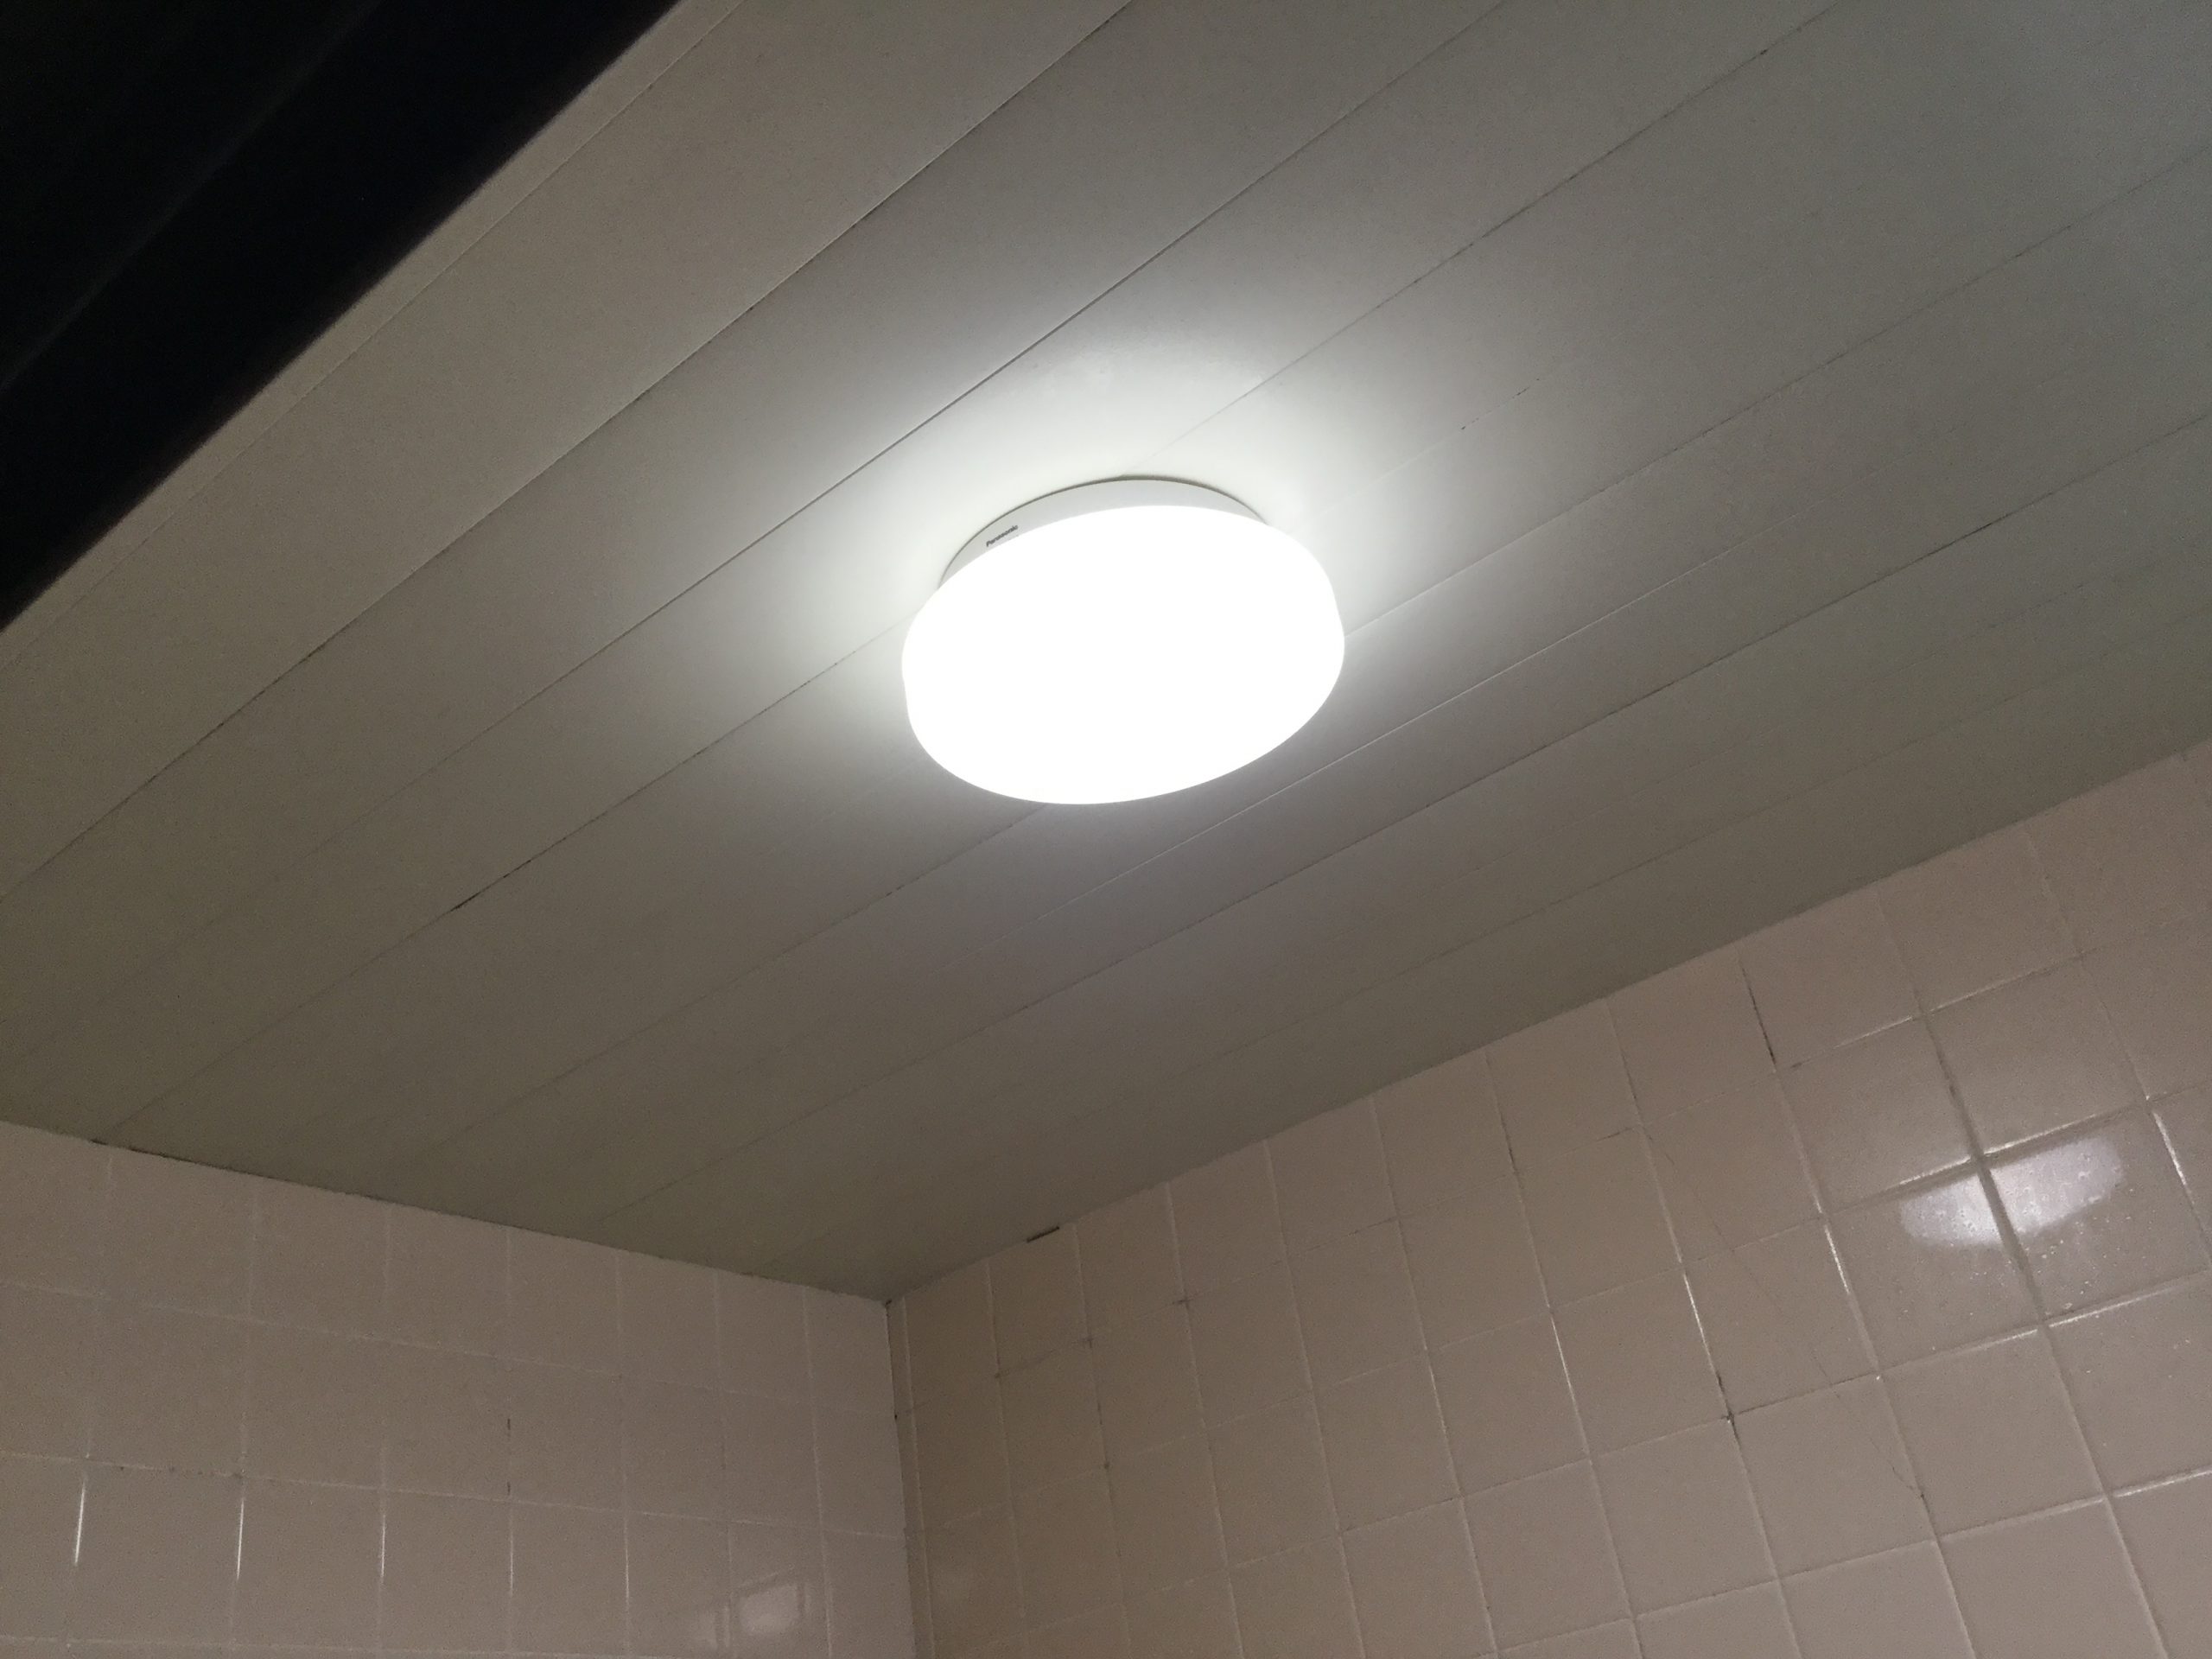 洗面所・浴室用照明器具 – ページ 4 – てるくにでんきの毎日は照明器具の毎日